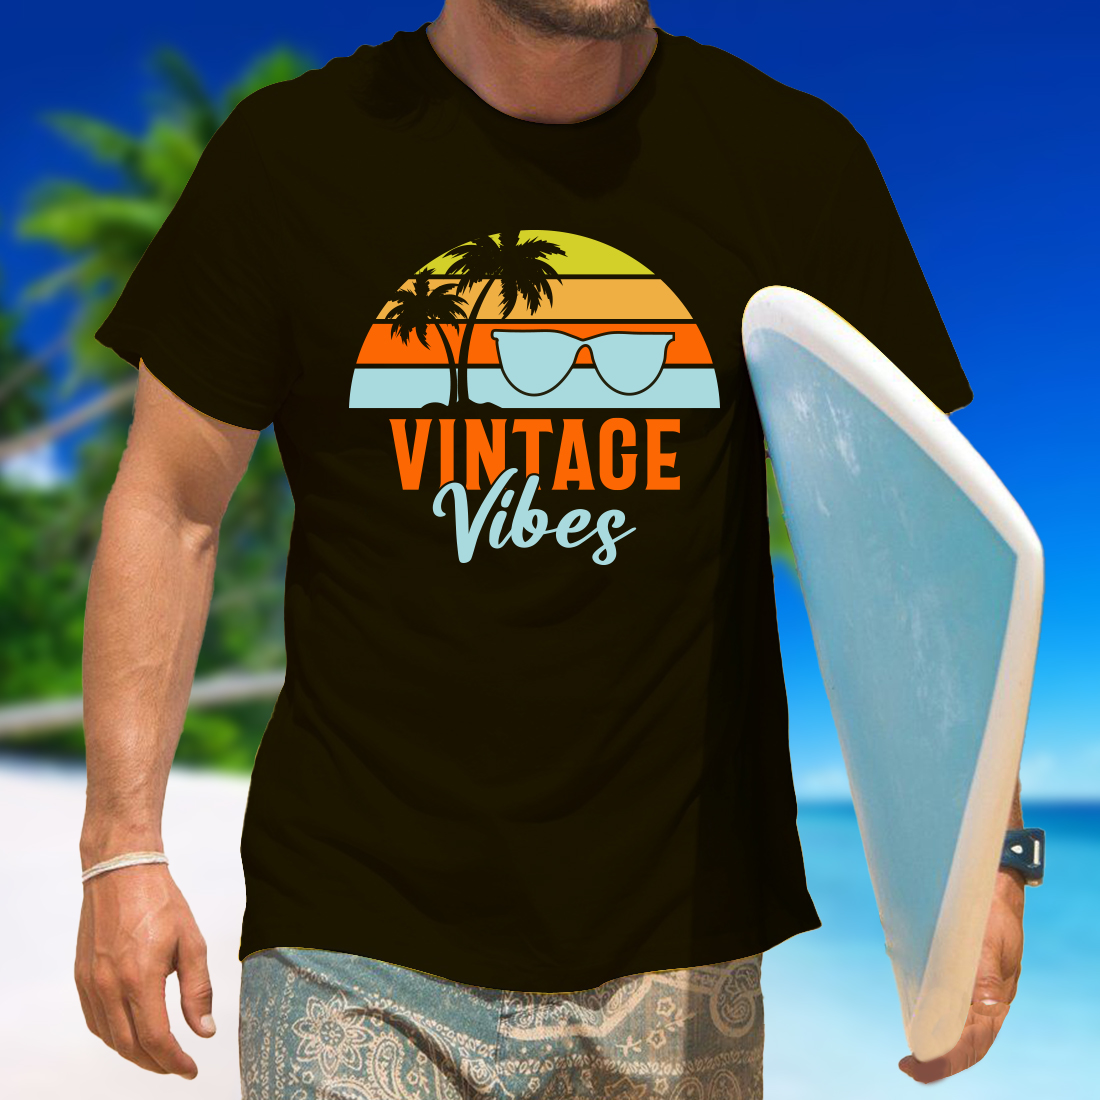 sunset t shirt design 6 987